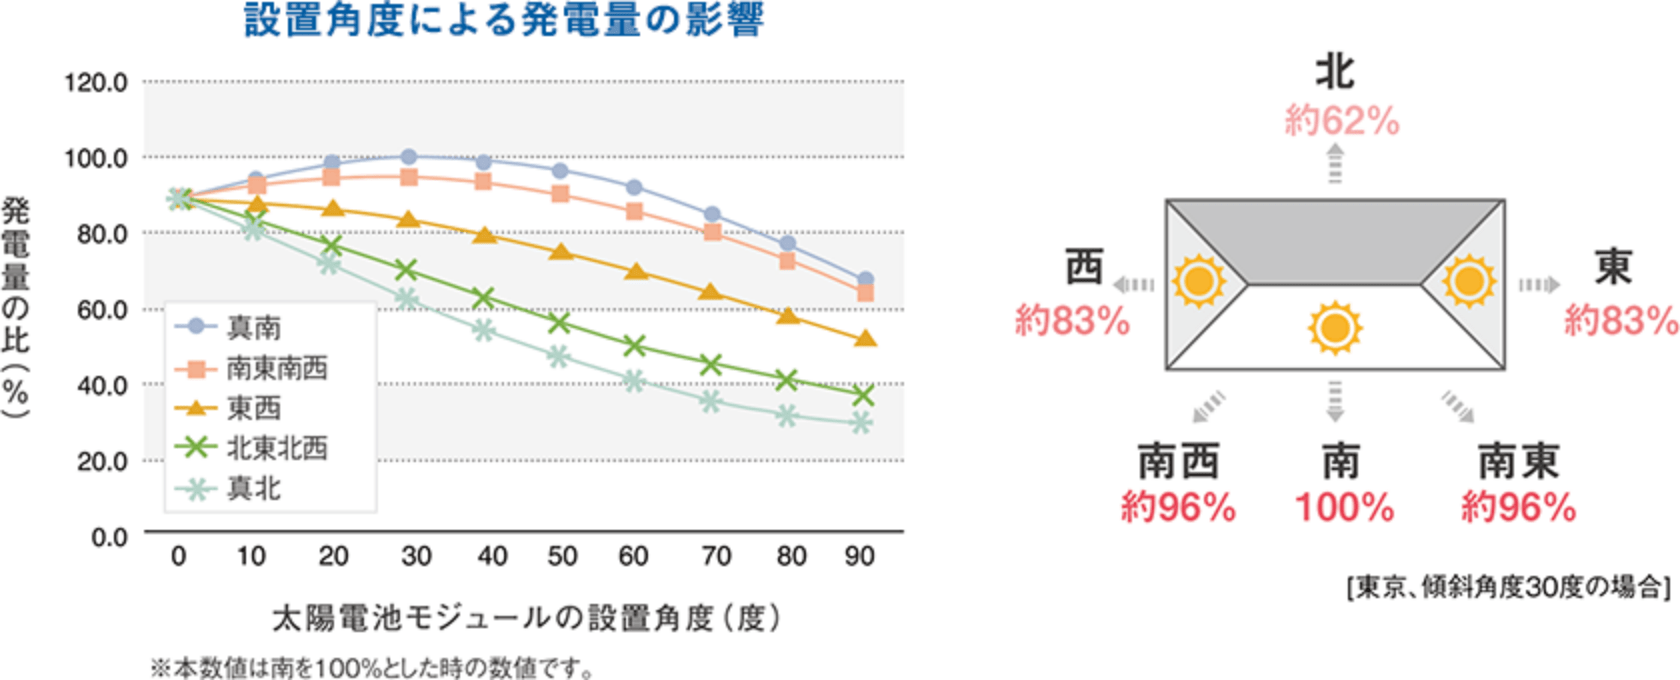 設置角度による発電量の影響のグラフ [東京、傾斜角度30度の場合] 南100% 南西約96% 西約83% 北約62% 東約83% 南東約96%